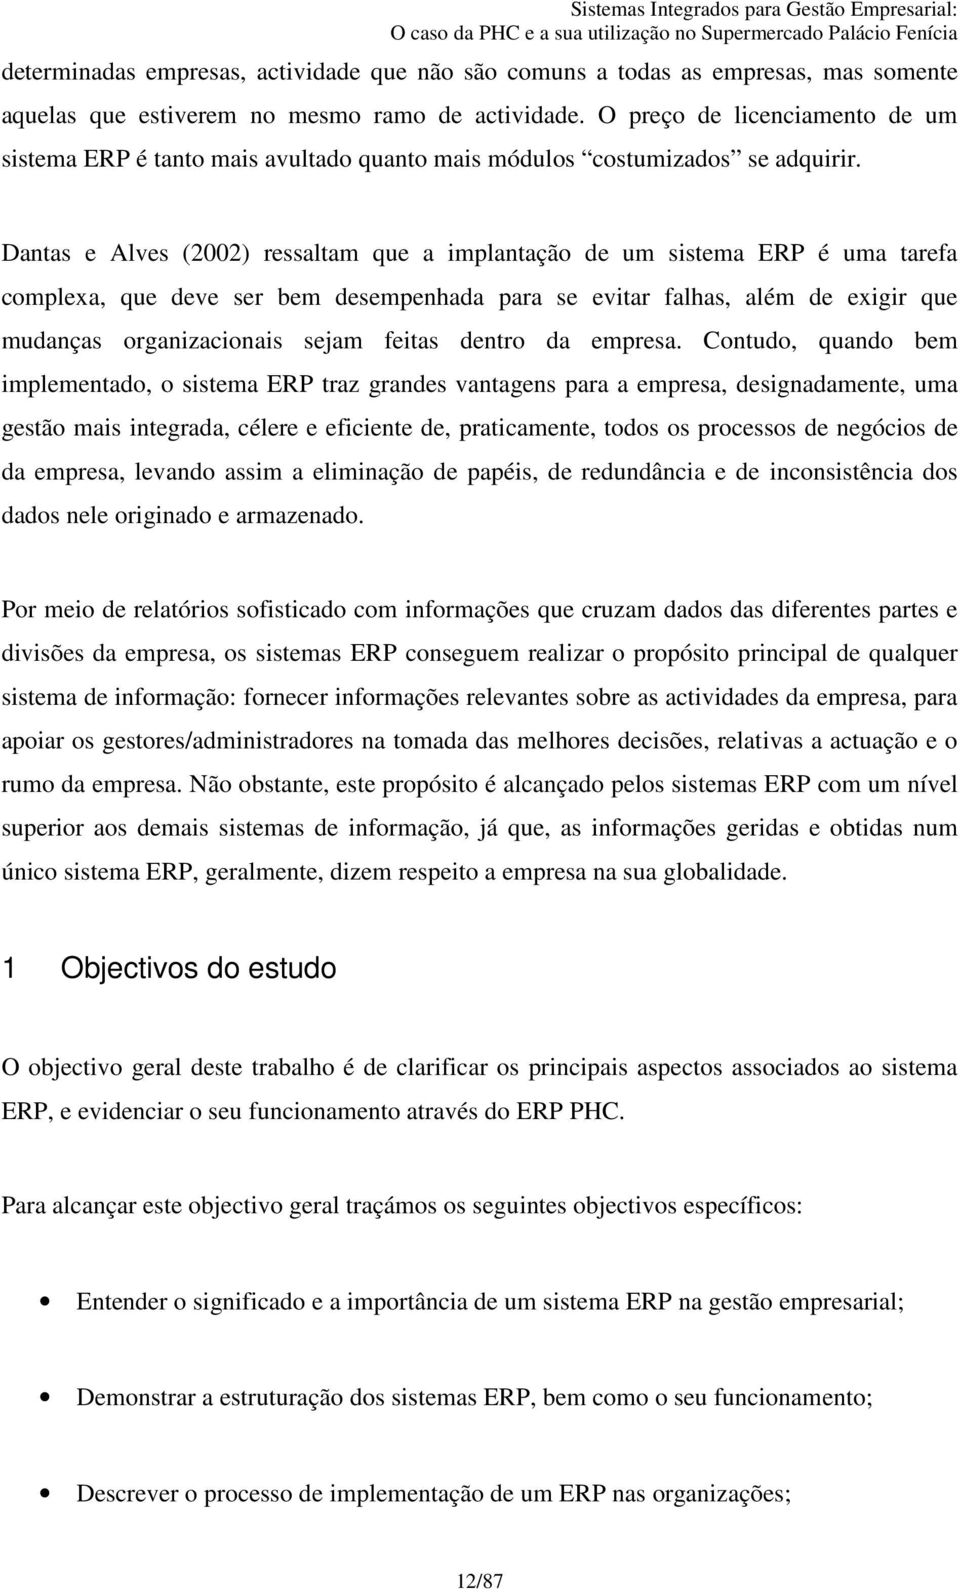 Dantas e Alves (2002) ressaltam que a implantação de um sistema ERP é uma tarefa complexa, que deve ser bem desempenhada para se evitar falhas, além de exigir que mudanças organizacionais sejam